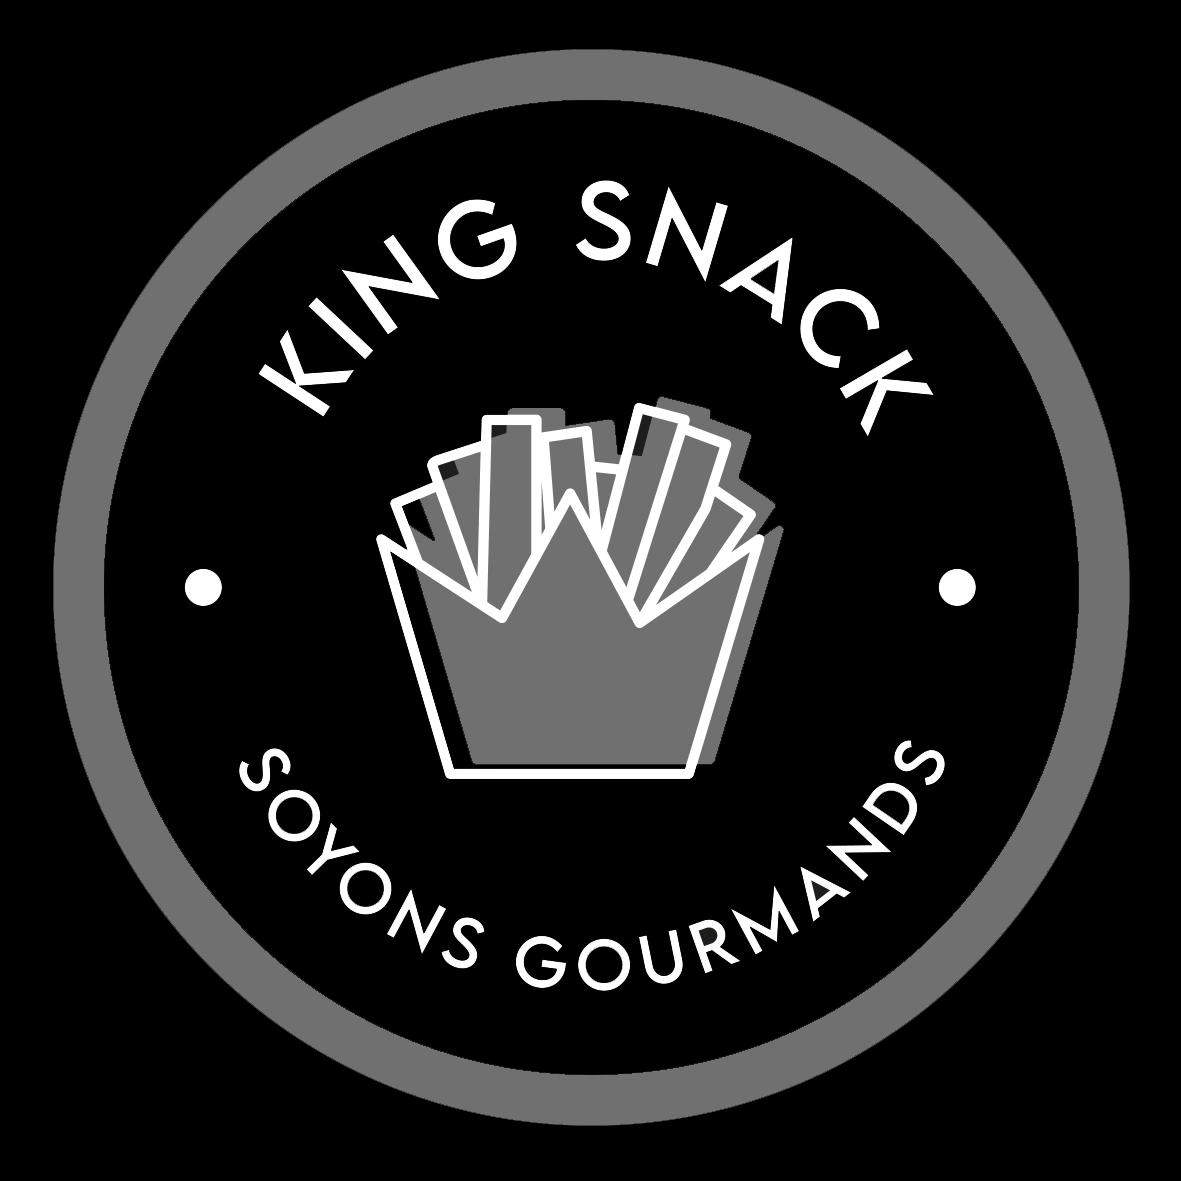 Lapostrophe king snack logo